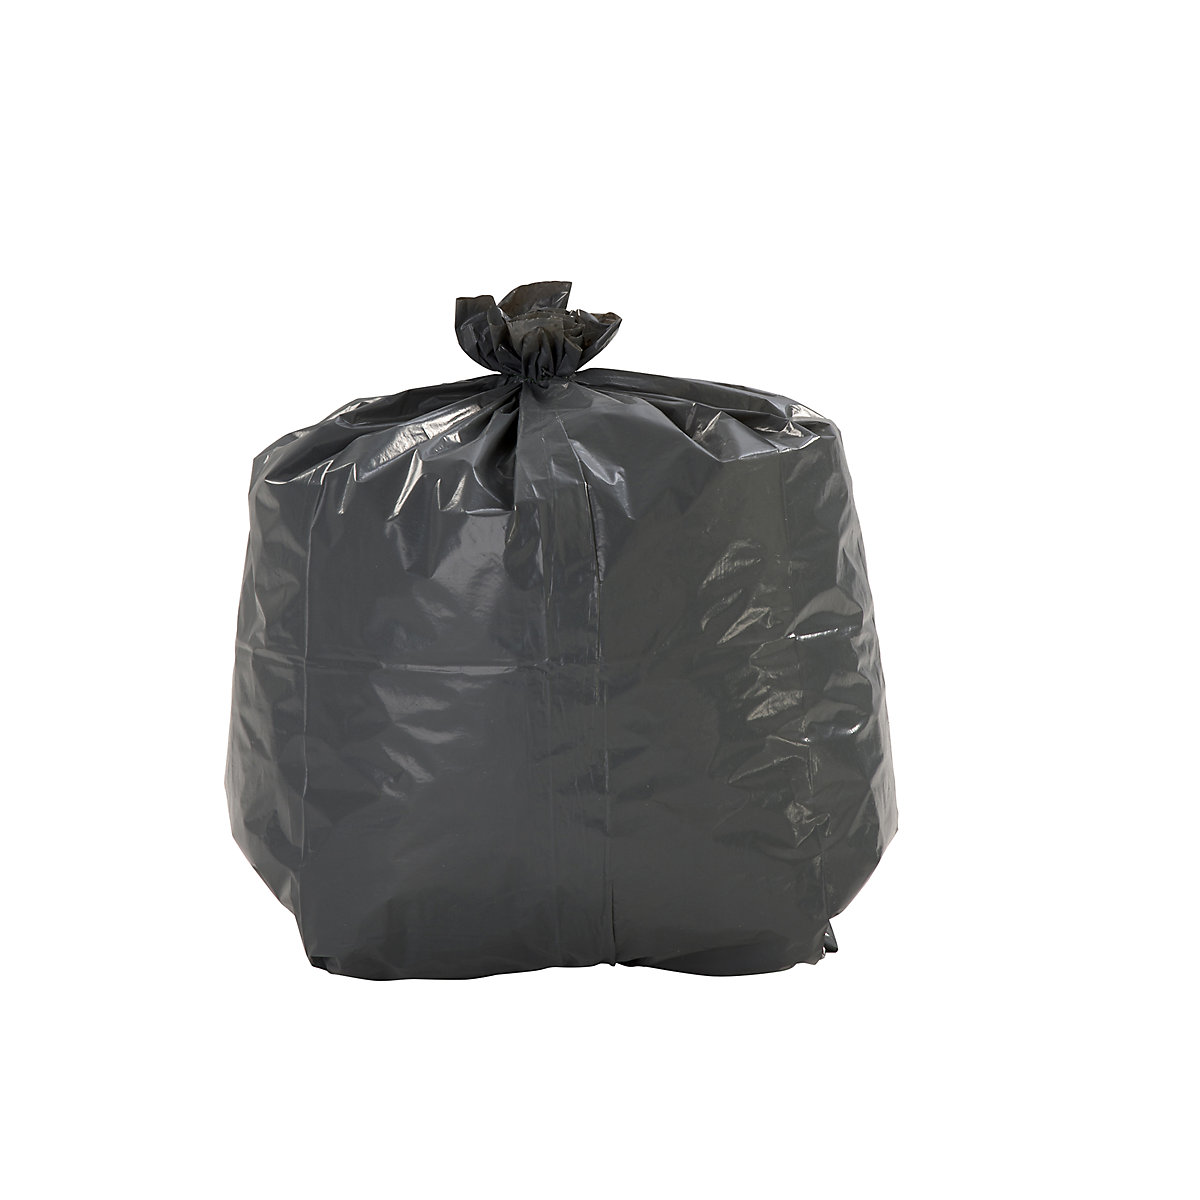 Rubbish bin bags, LDPE